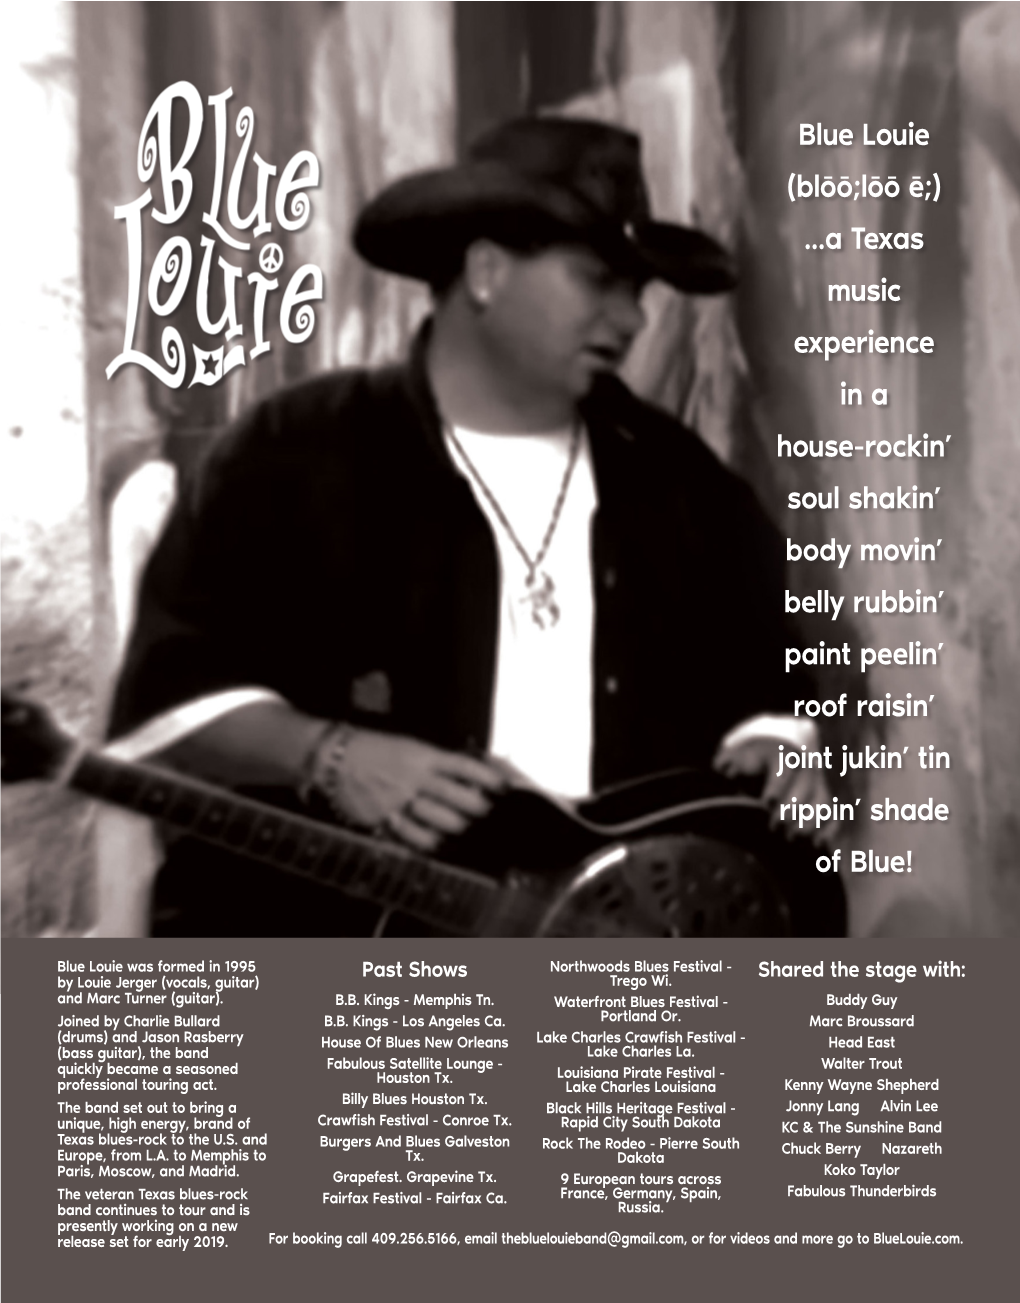 Blue Louie (Blōō;Lōō Ē;) ...A Texas Music Experience in a House